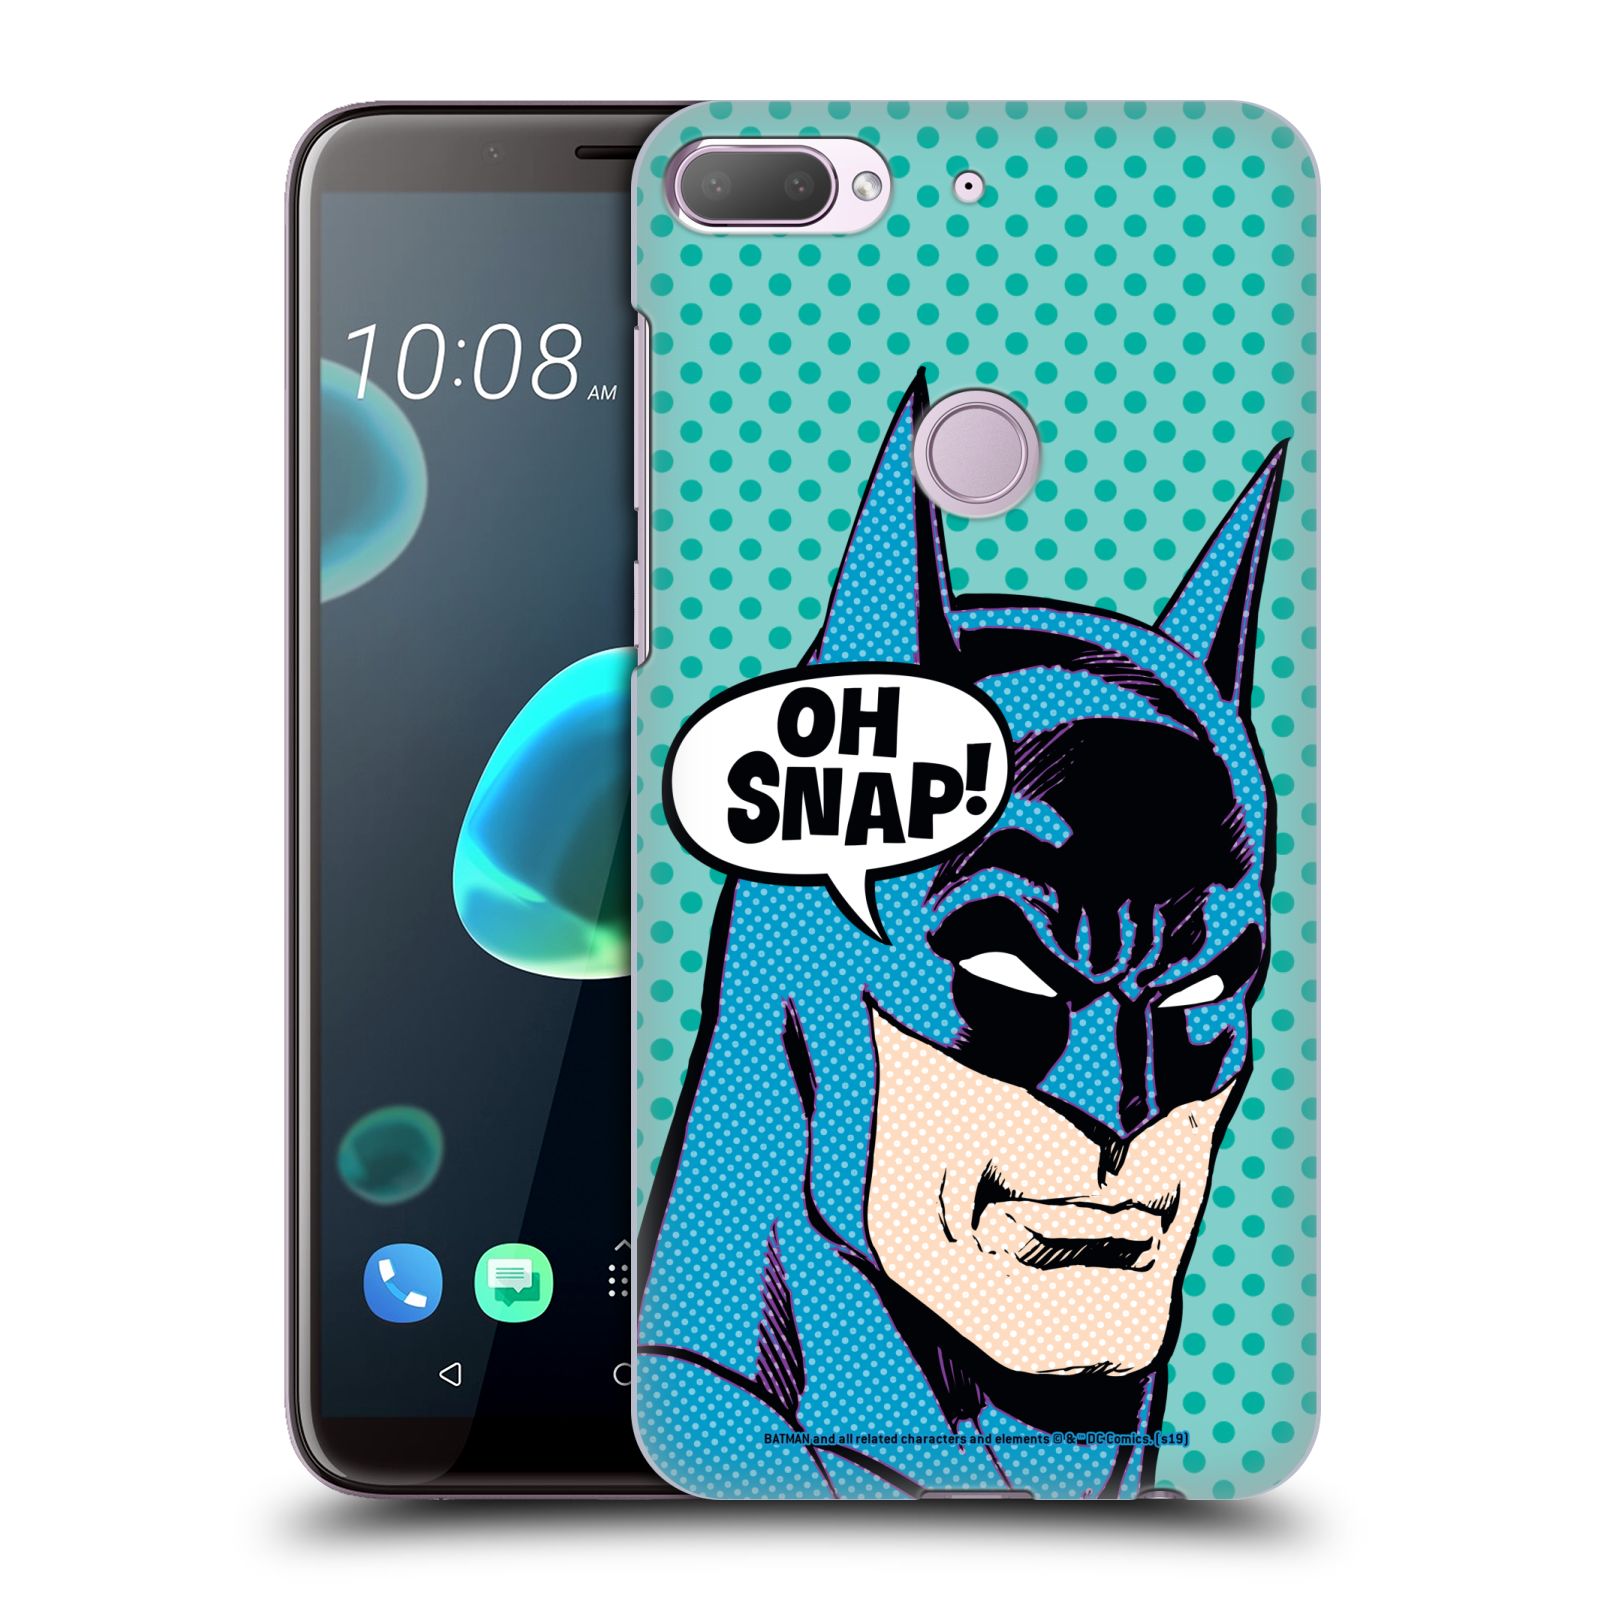 Pouzdro na mobil HTC Desire 12+ / Desire 12+ DUAL SIM - HEAD CASE - DC komix Batman Pop Art tvář